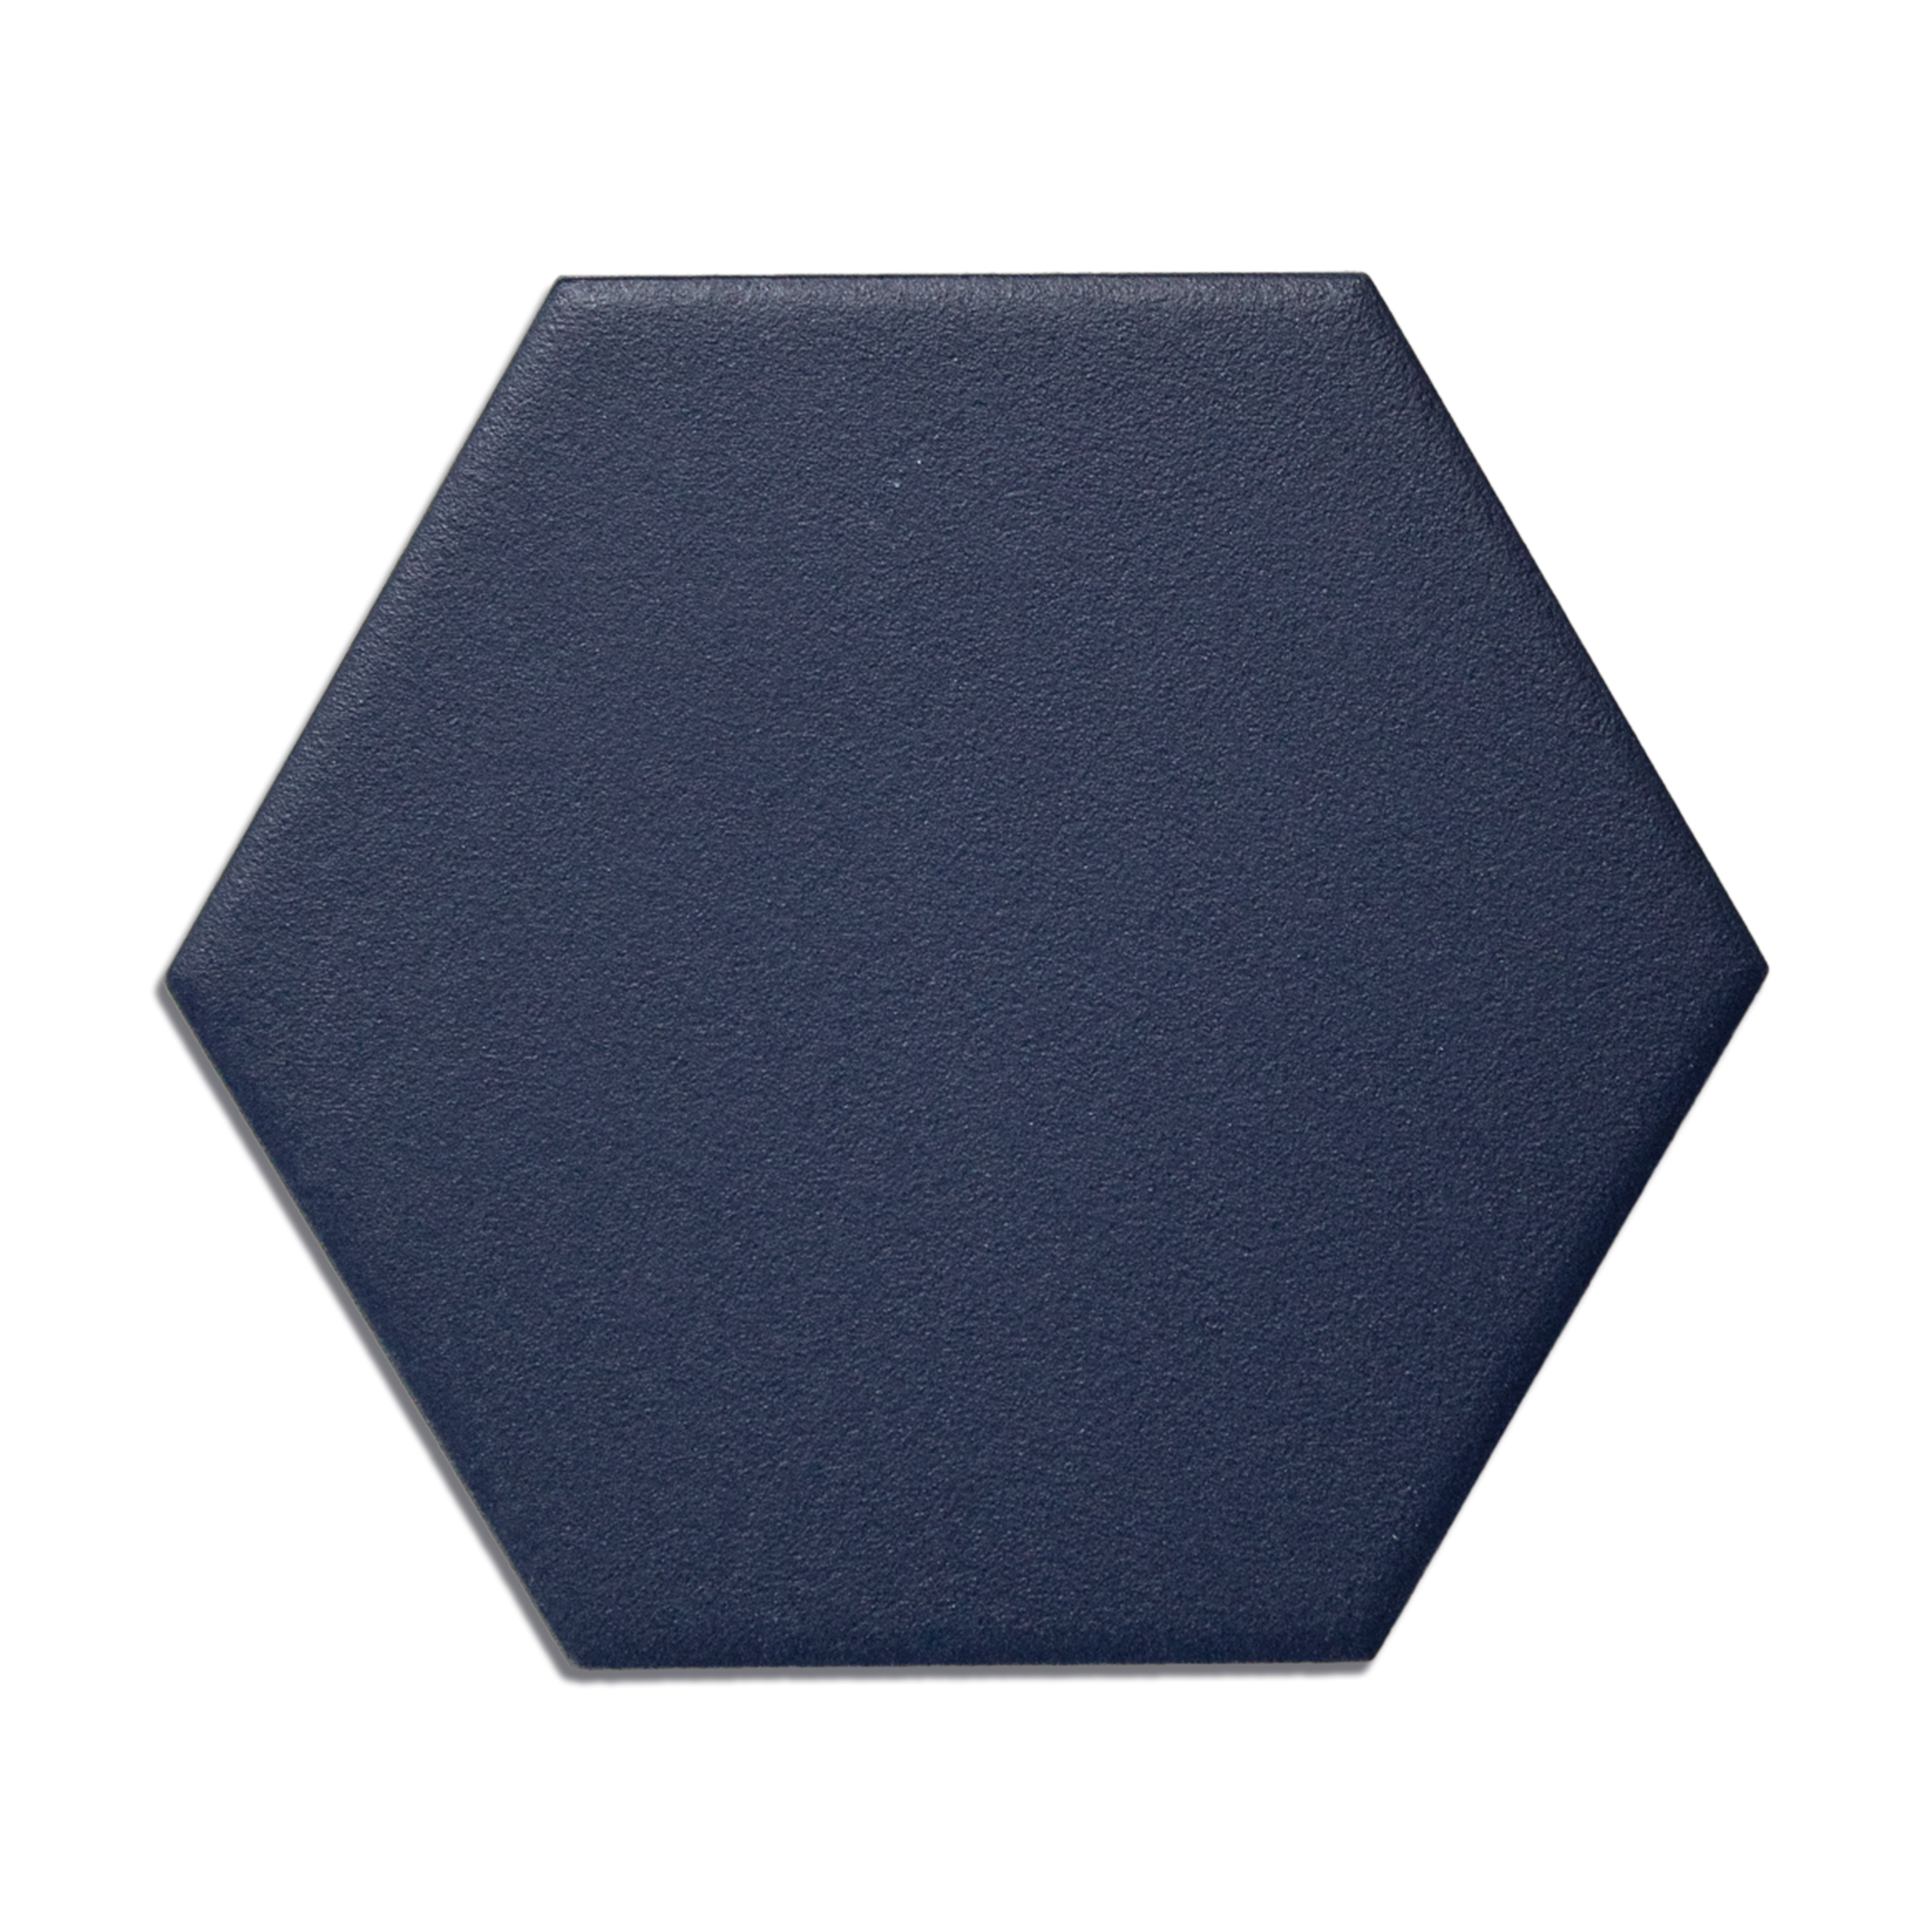 Trucco Hexagon Royal Blue 4.25x5 Full Body Porcelain Tile